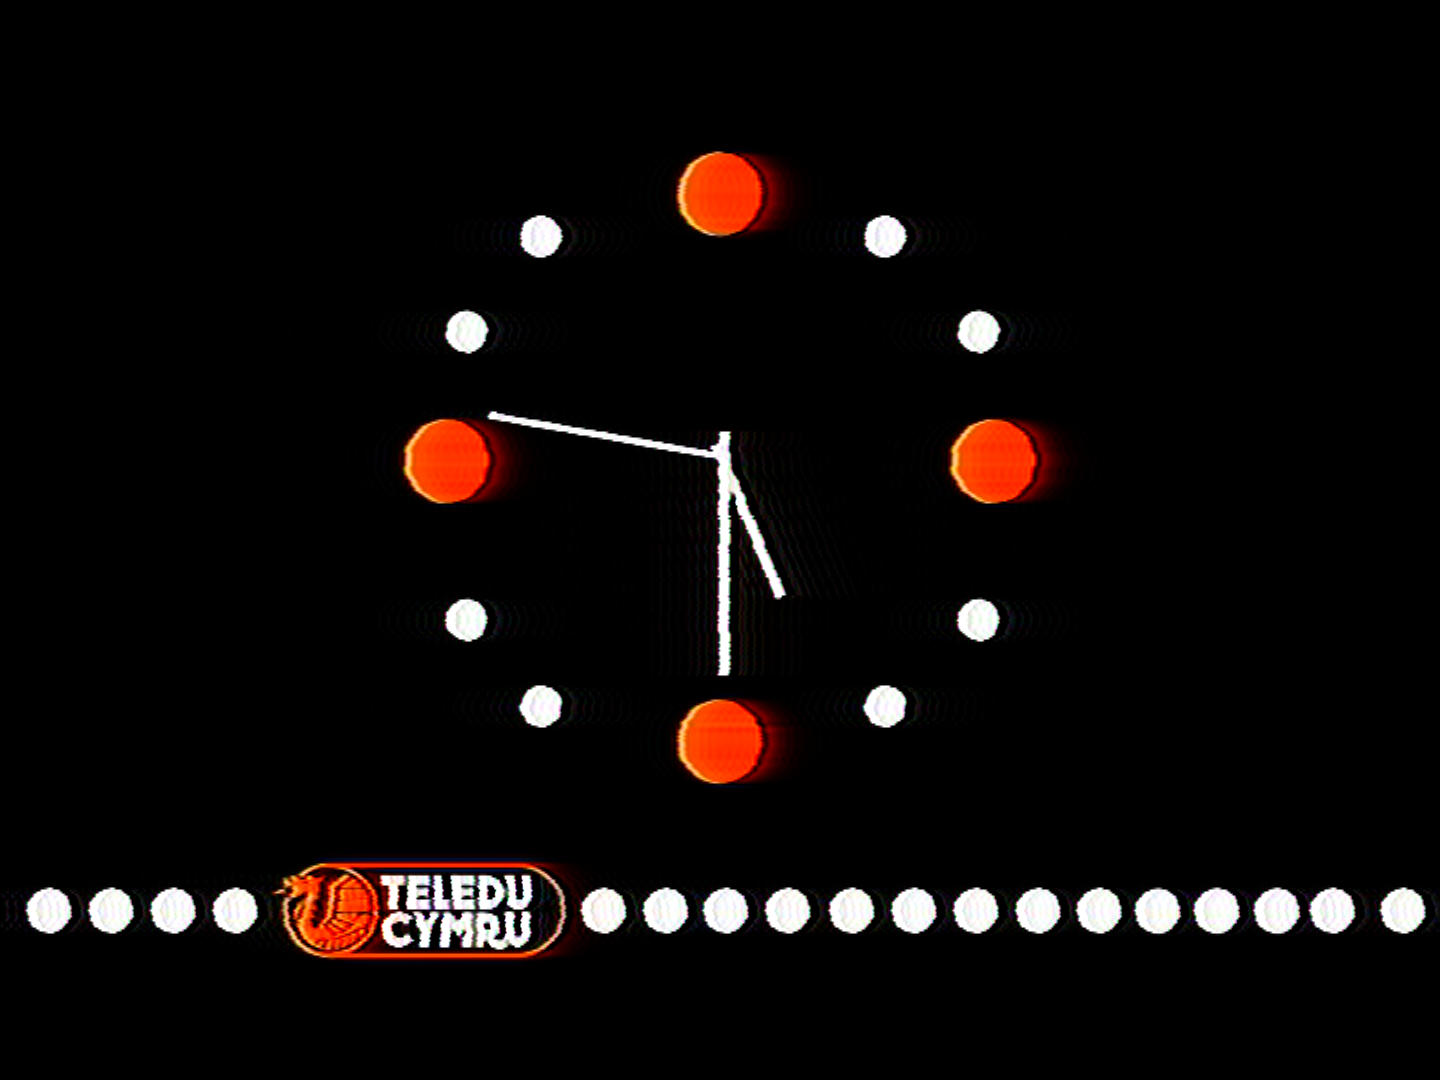 Teledu Cymru clock (1982)